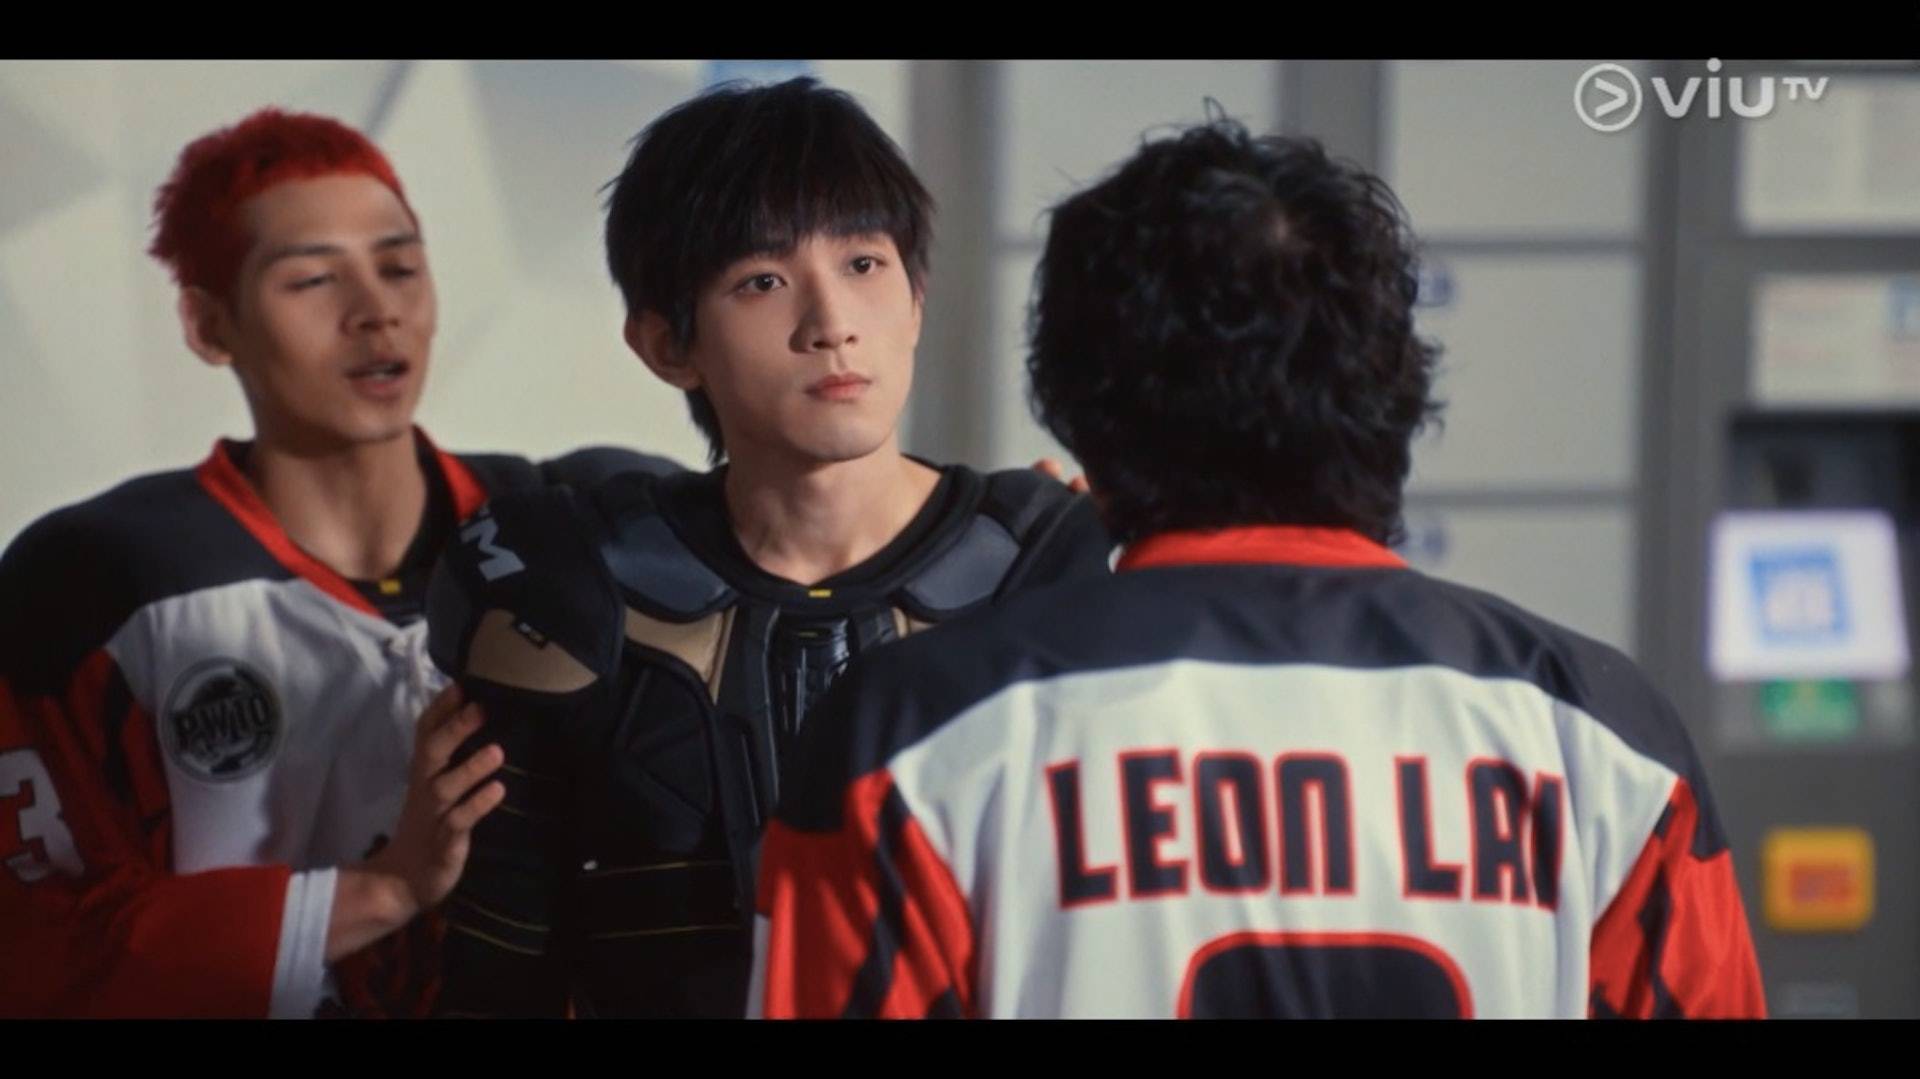 王智騫 王智騫Martin）第二部電視劇《冰上火花》中飾演冰球員JY黃祖賢）一角，亦是火花隊SPARKS隊員16號），司職中鋒。